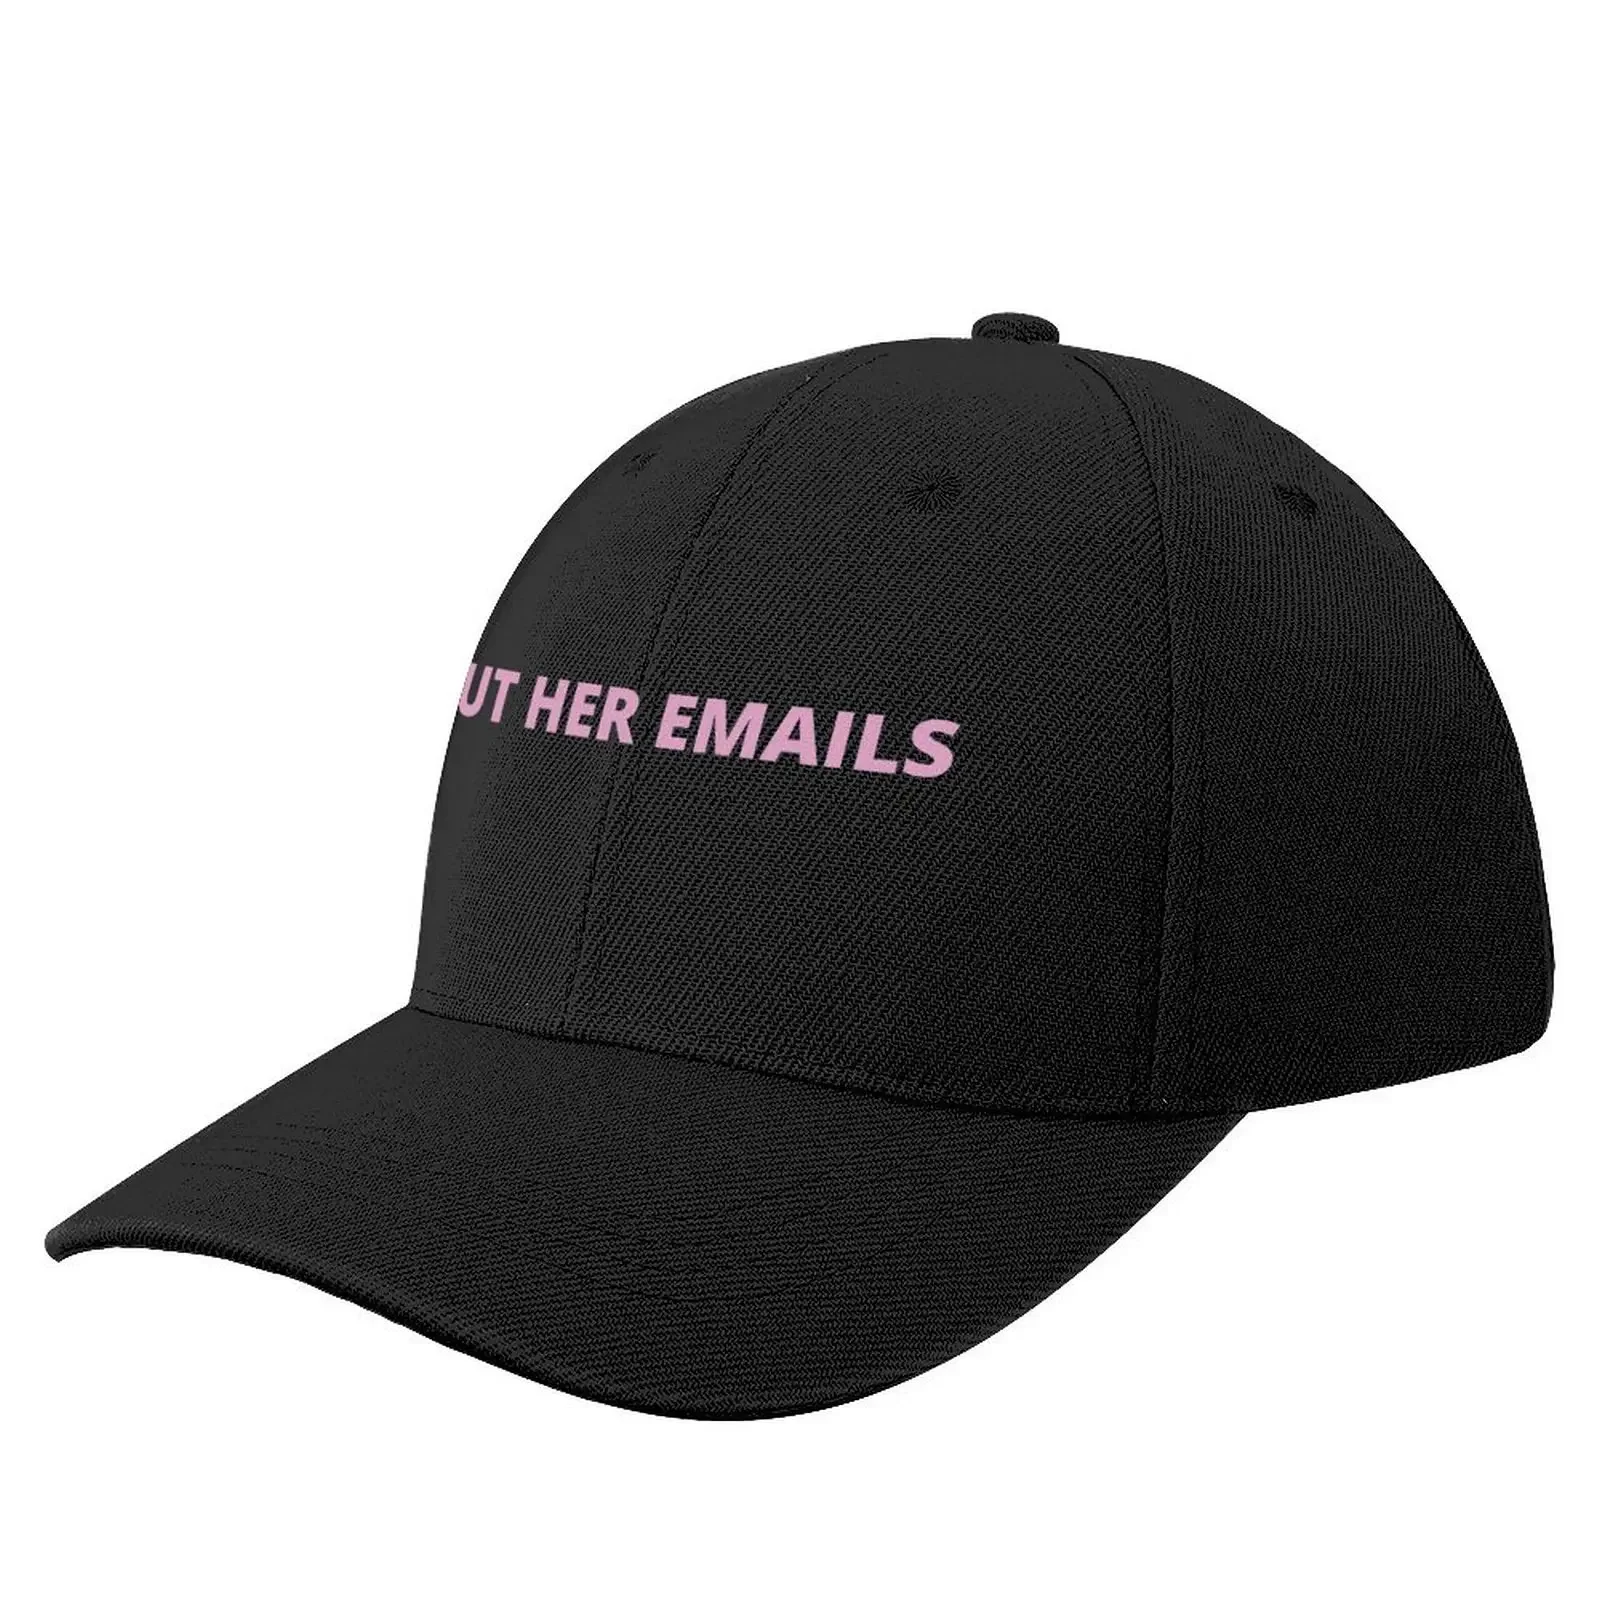 

But her emails, hillary Baseball Cap Hat Man For The Sun Snapback Cap Golf Cap Golf Wear Men Women's